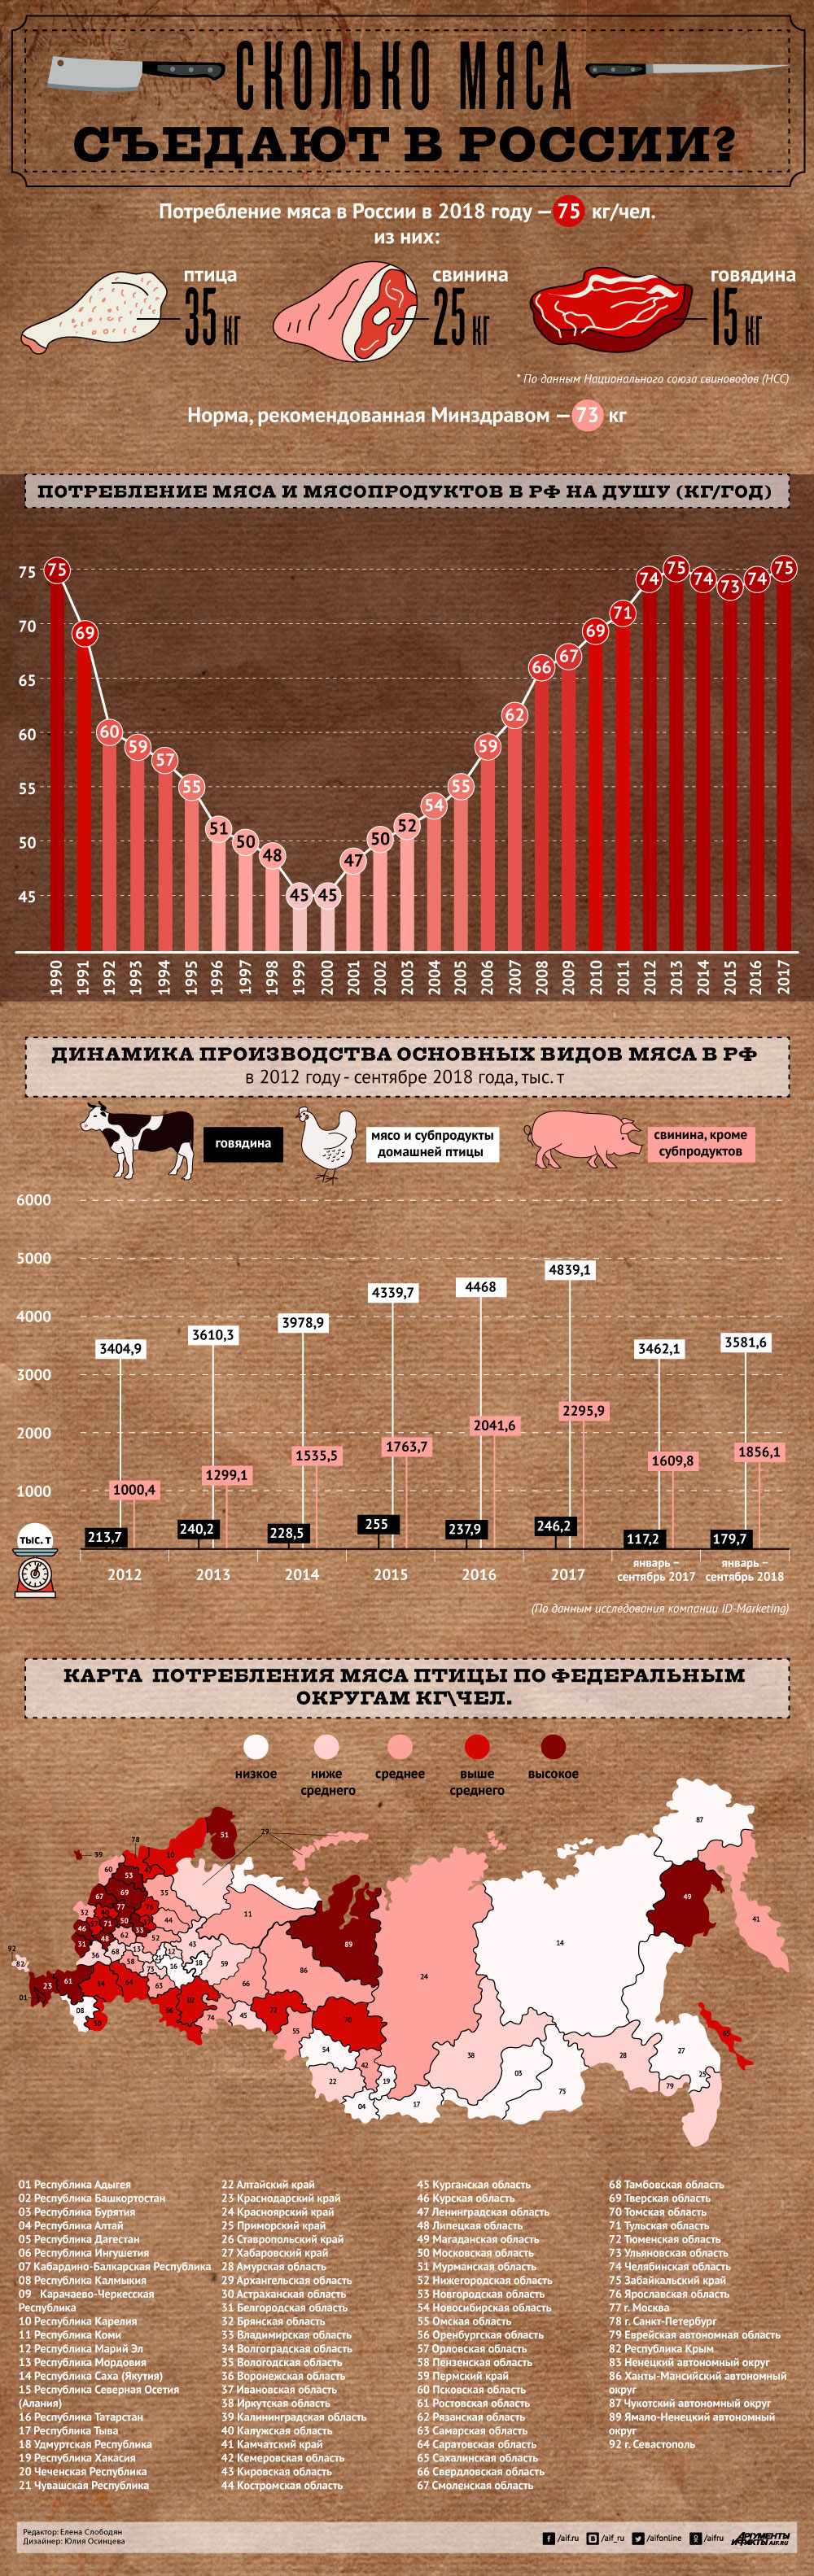 Инфографика: Сколько мяса съедают в России?